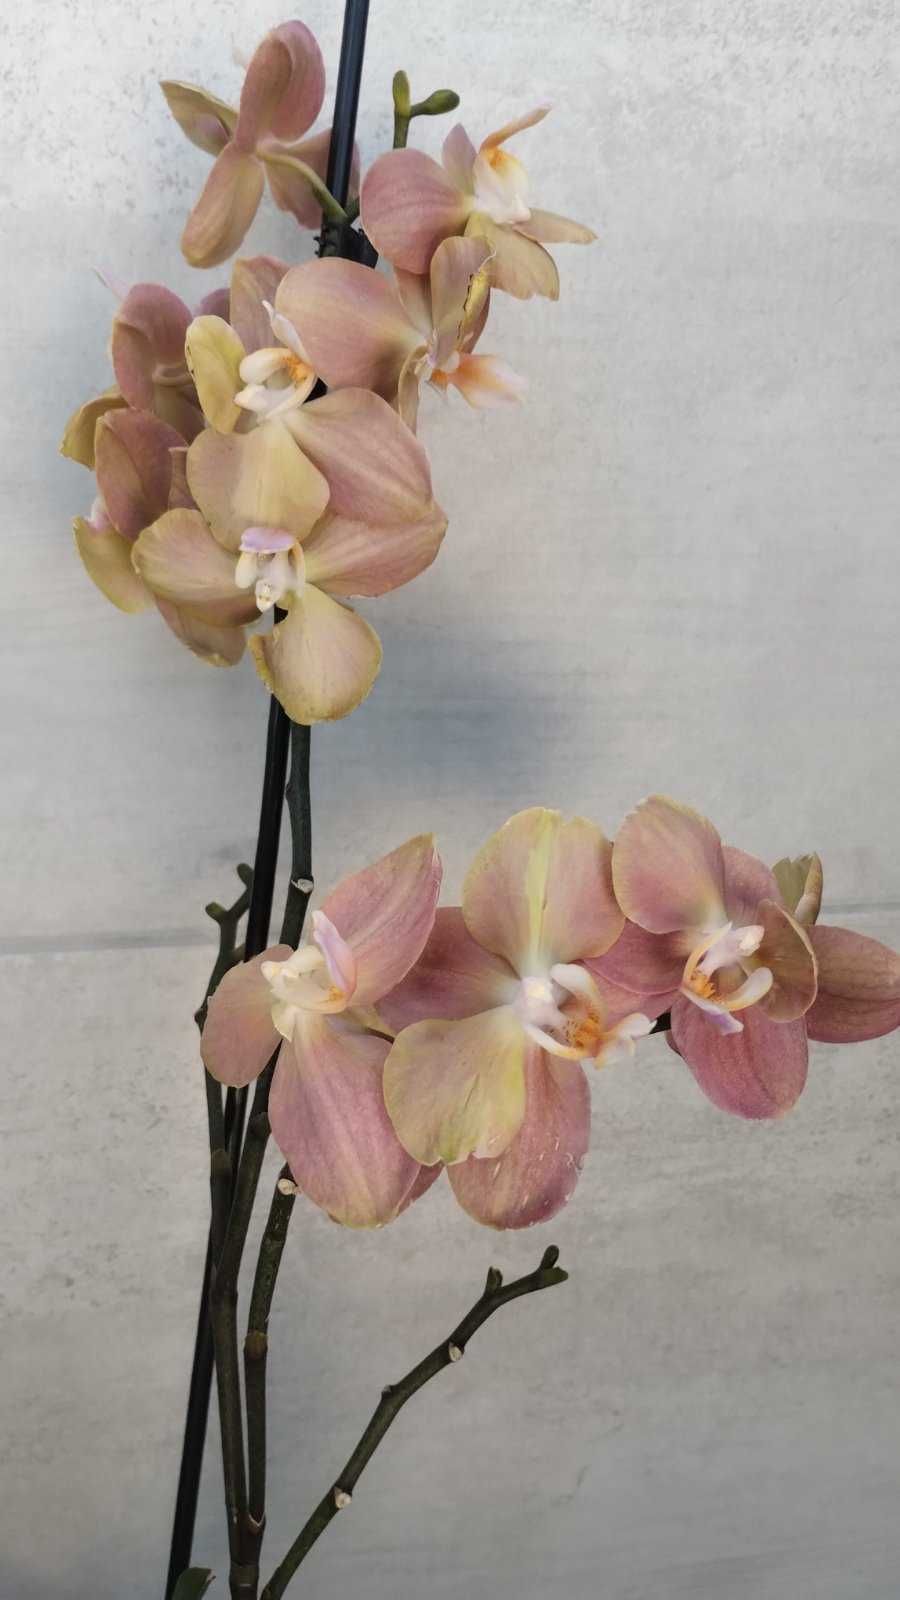 Орхідея фаленопсис Монако квітуча